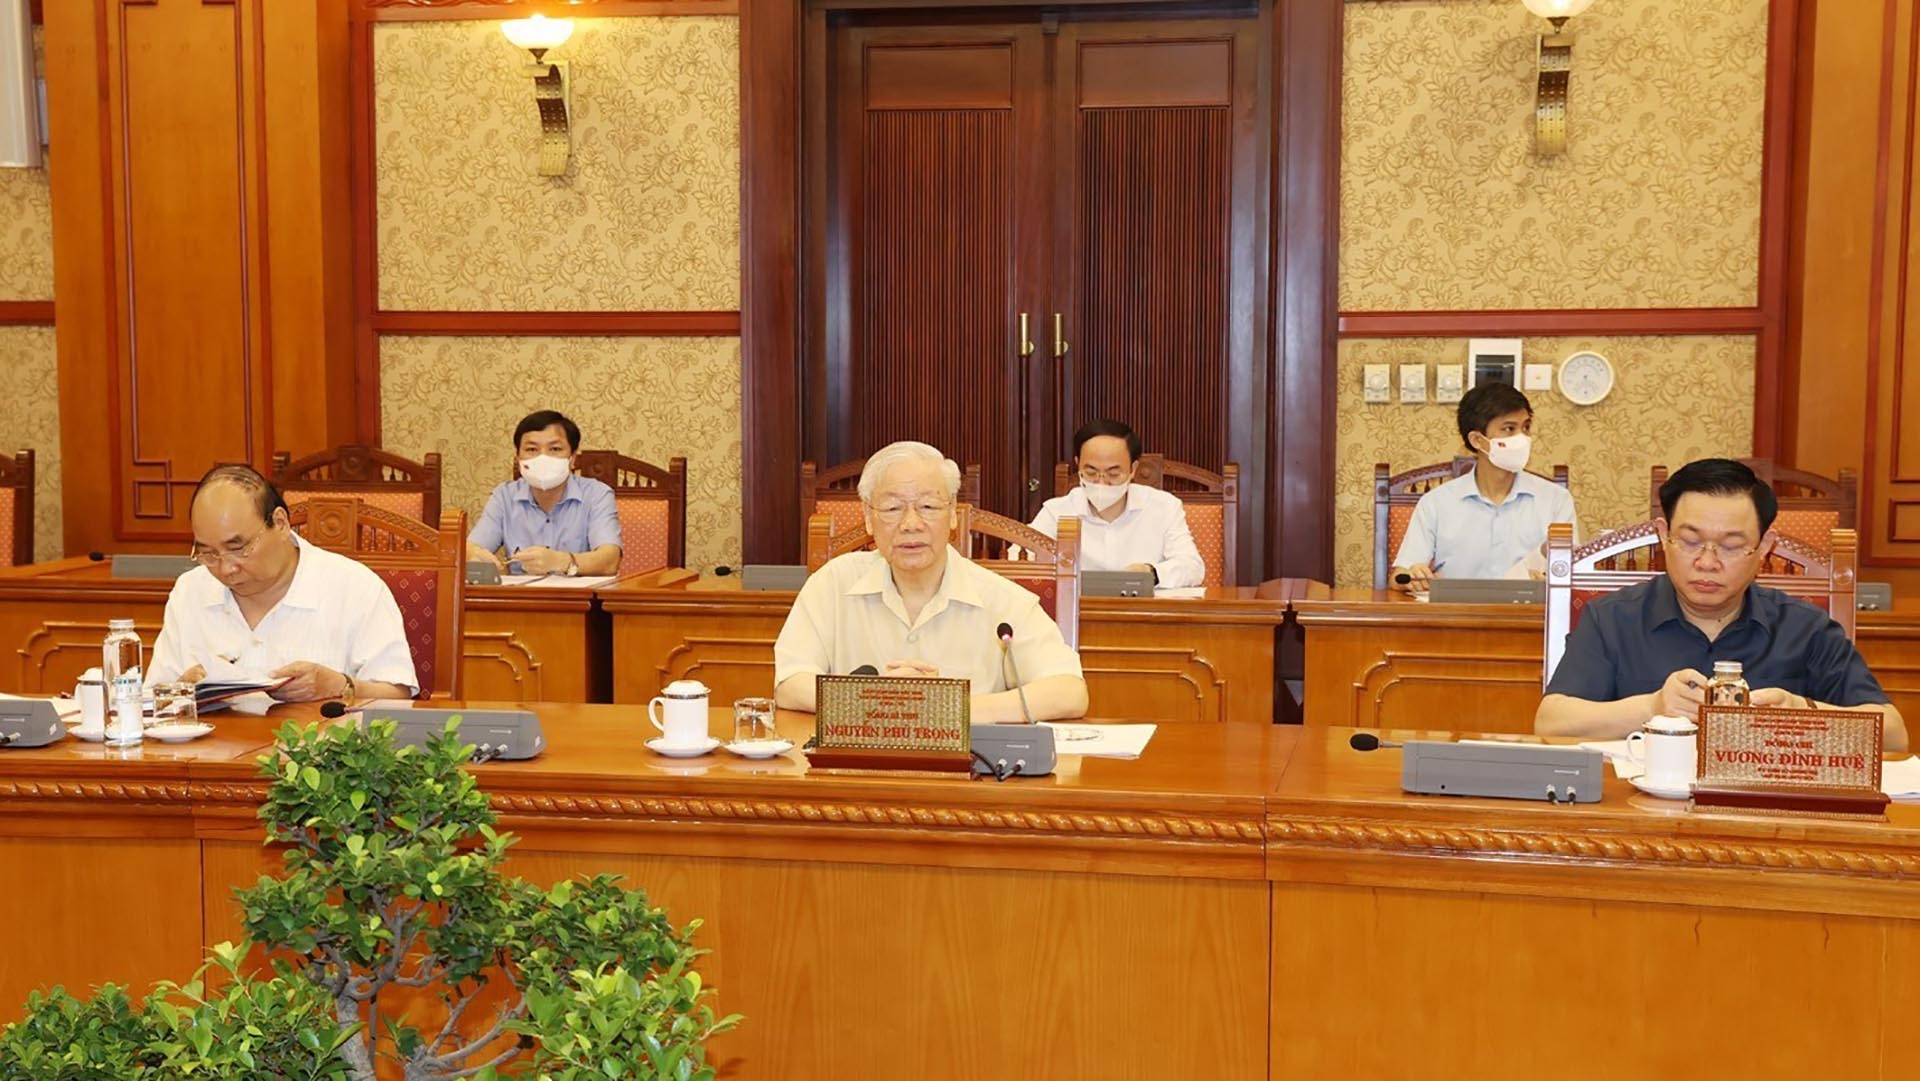 Tổng Bí thư Nguyễn Phú Trọng và các đồng chí lãnh đạo chủ chốt nghe báo cáo về tình hình dịch bệnh và công tác phòng, chống dịch COVID-19. (Nguồn: TTXVN)